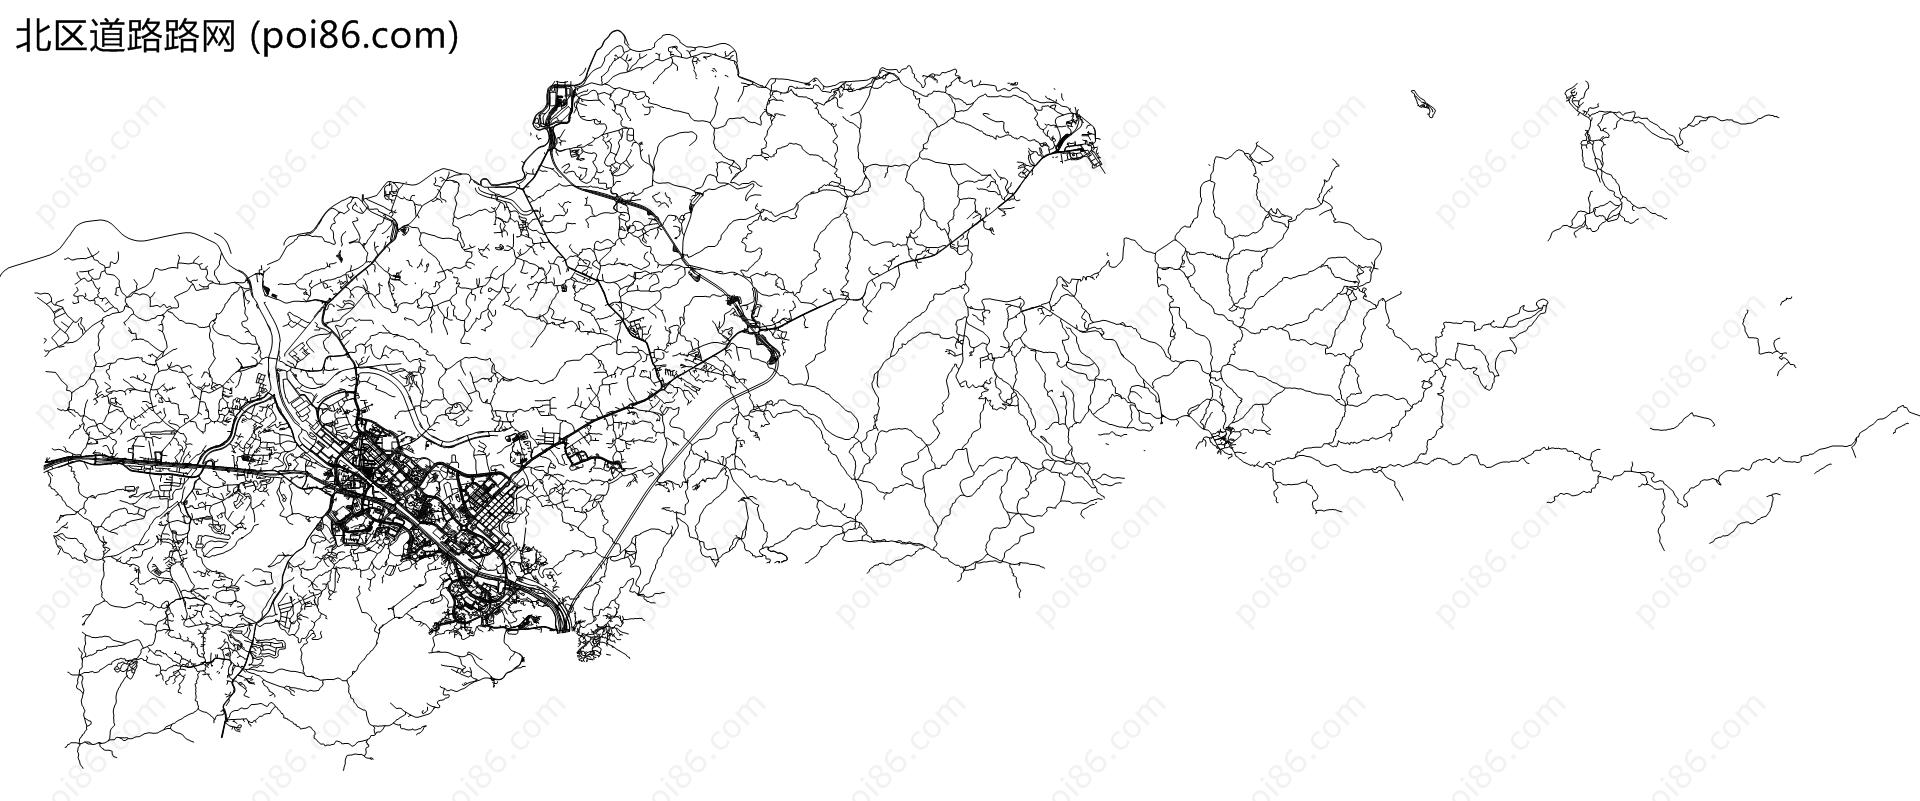 北区道路路网地图